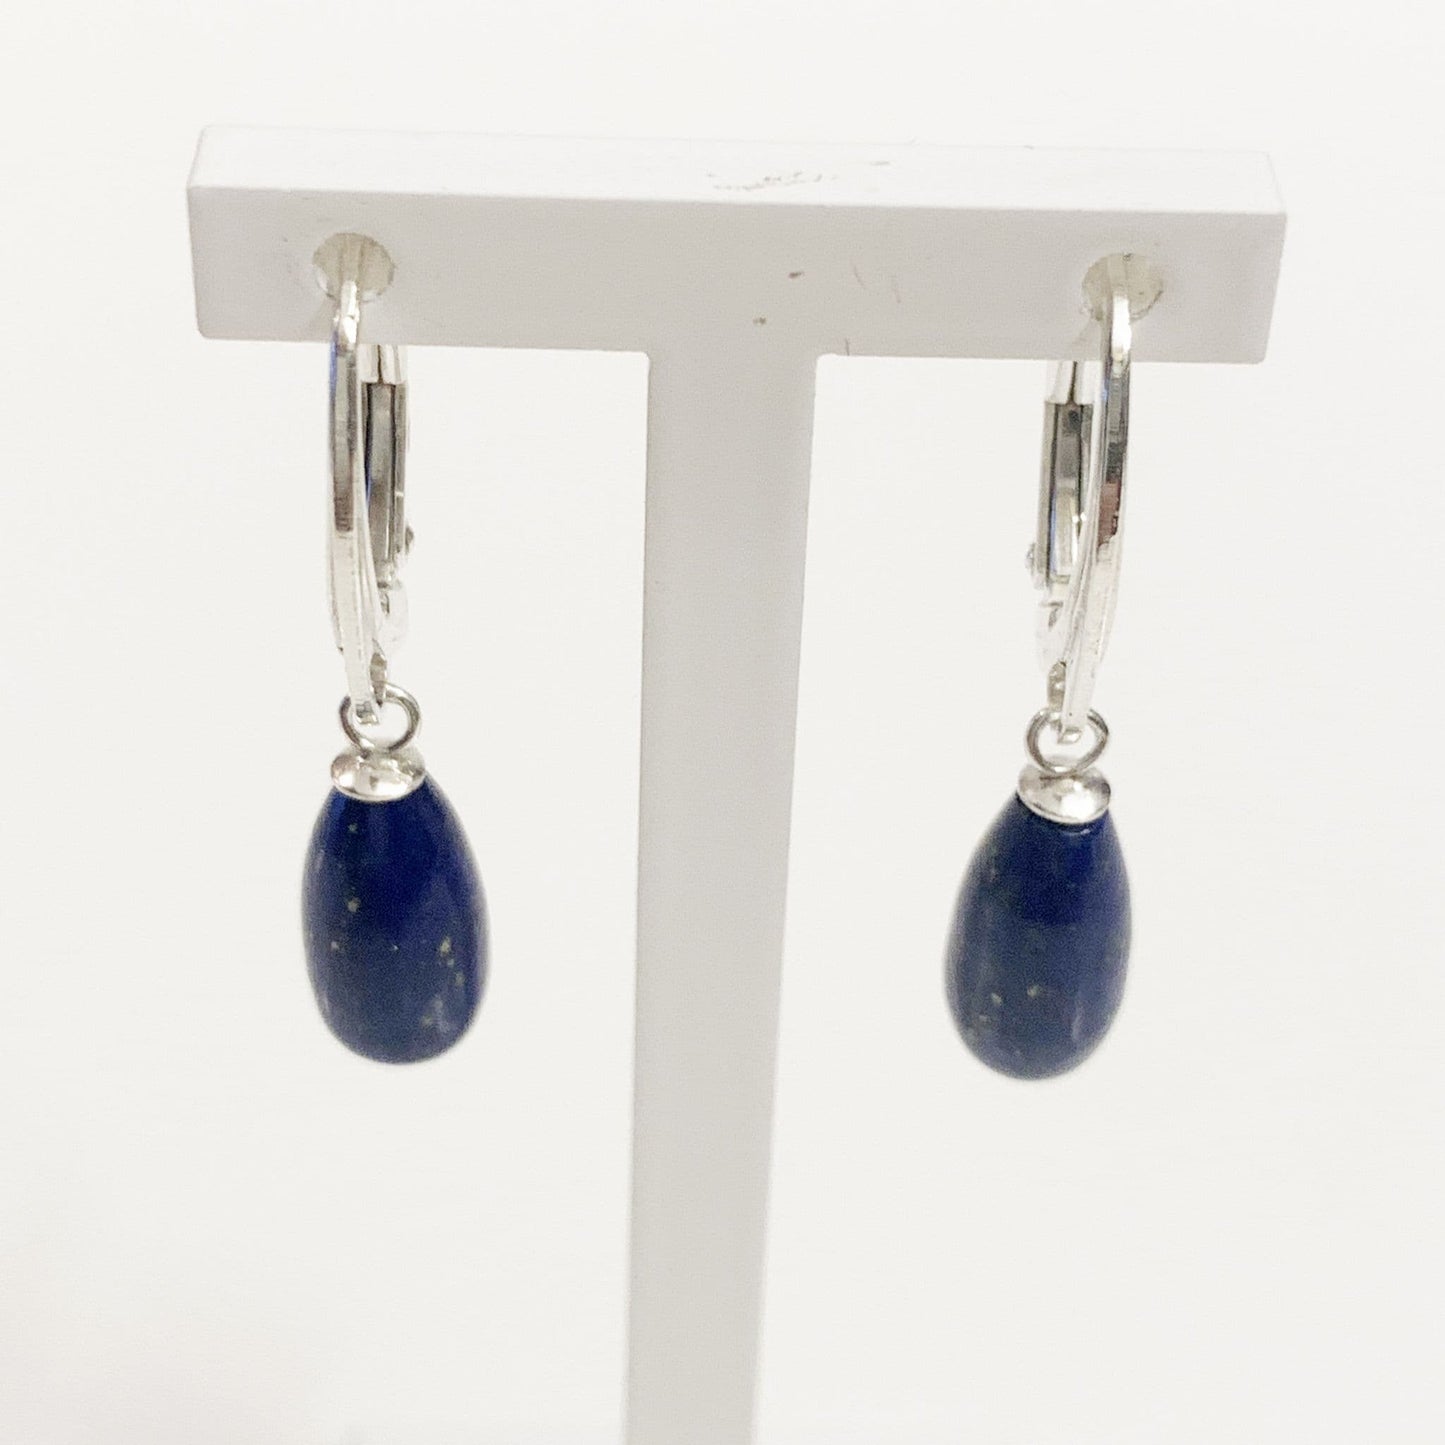 Lapis Lazuli Blue Teardrop Shaped Sterling Silver Drop Earrings